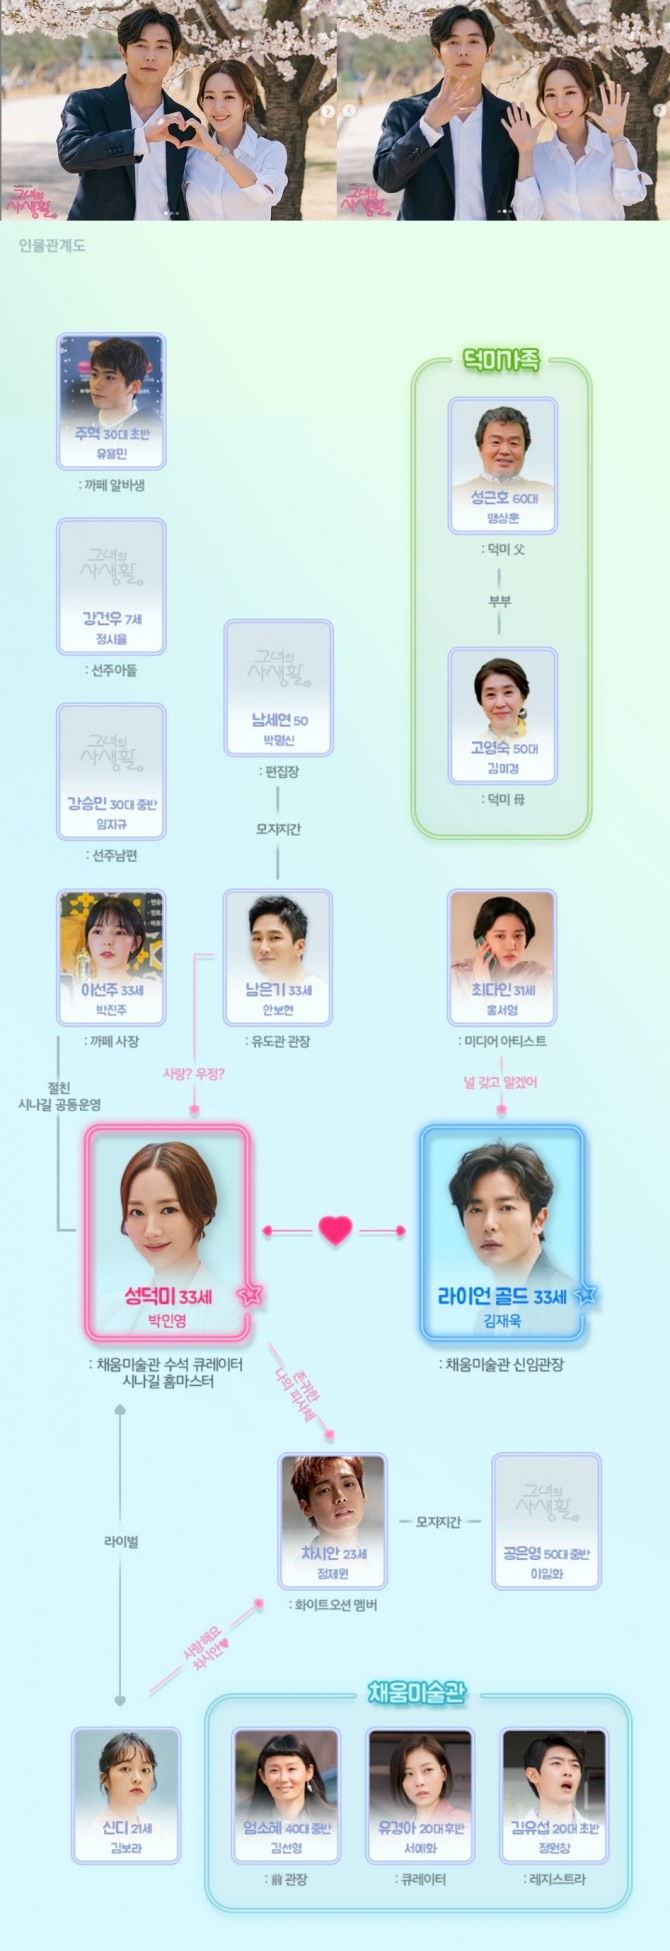 10일 첫방송되는 tvN 수목드라마 '그녀의 사생활' 인물관계도. 사진=tvN 제공